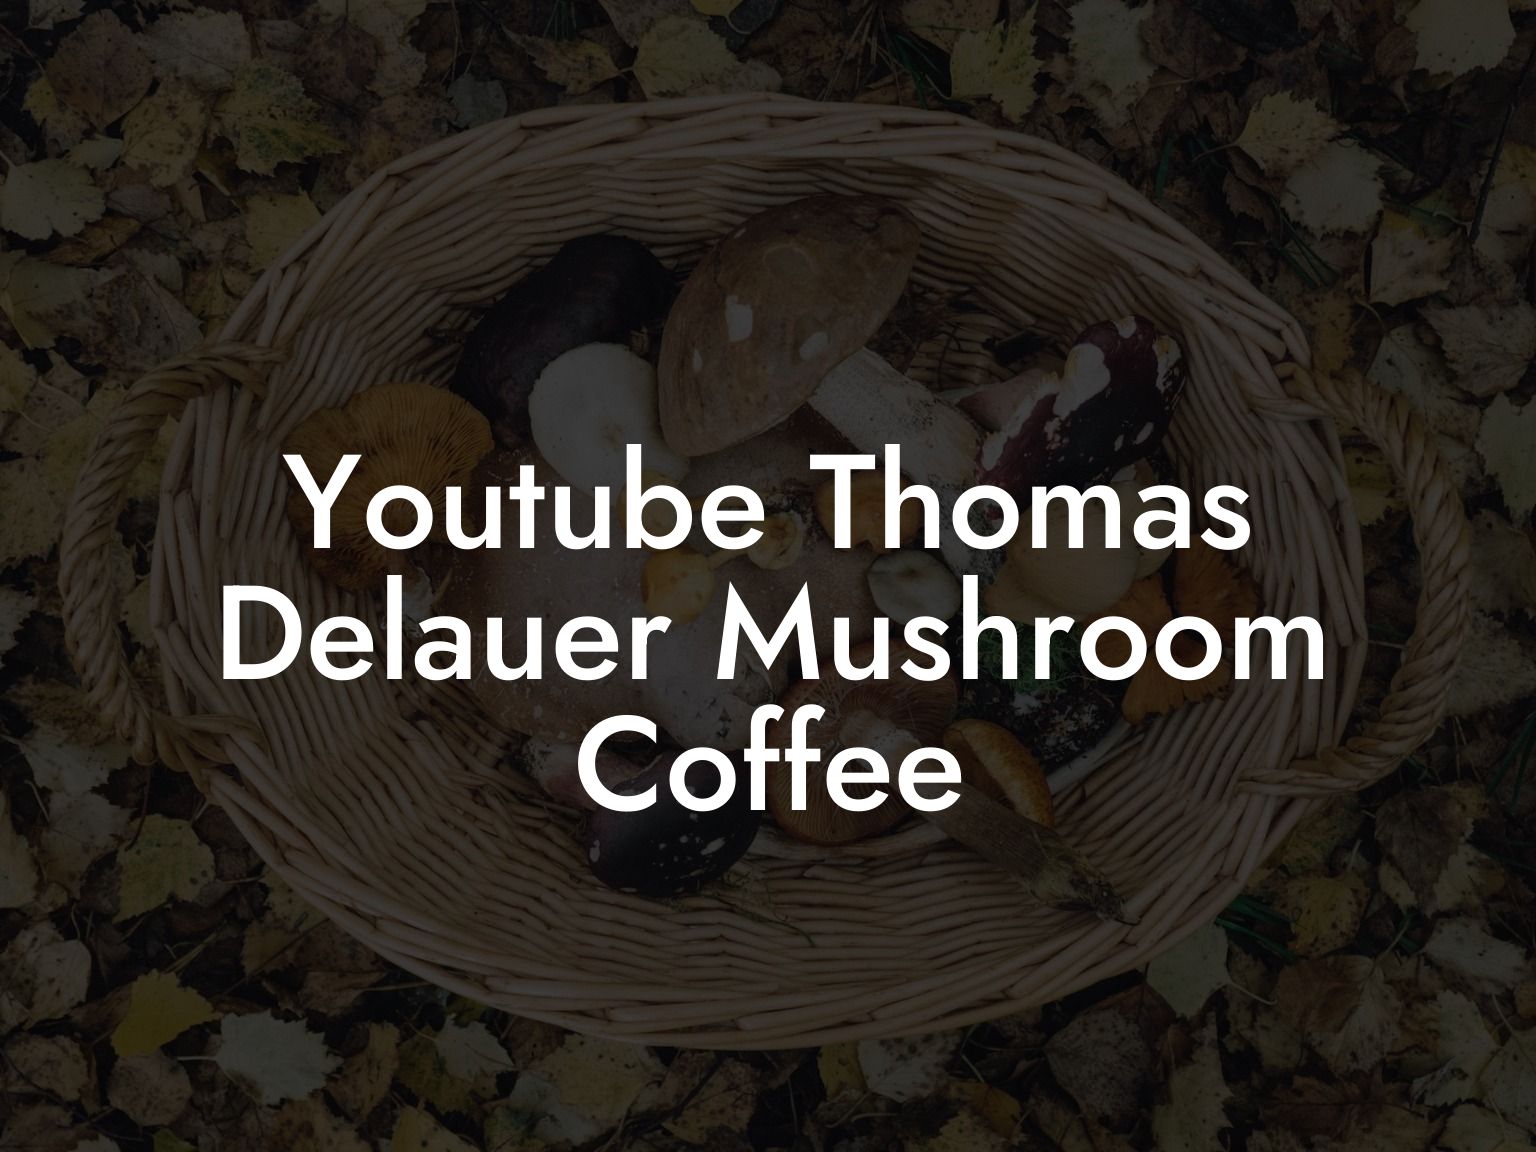 Youtube Thomas Delauer Mushroom Coffee